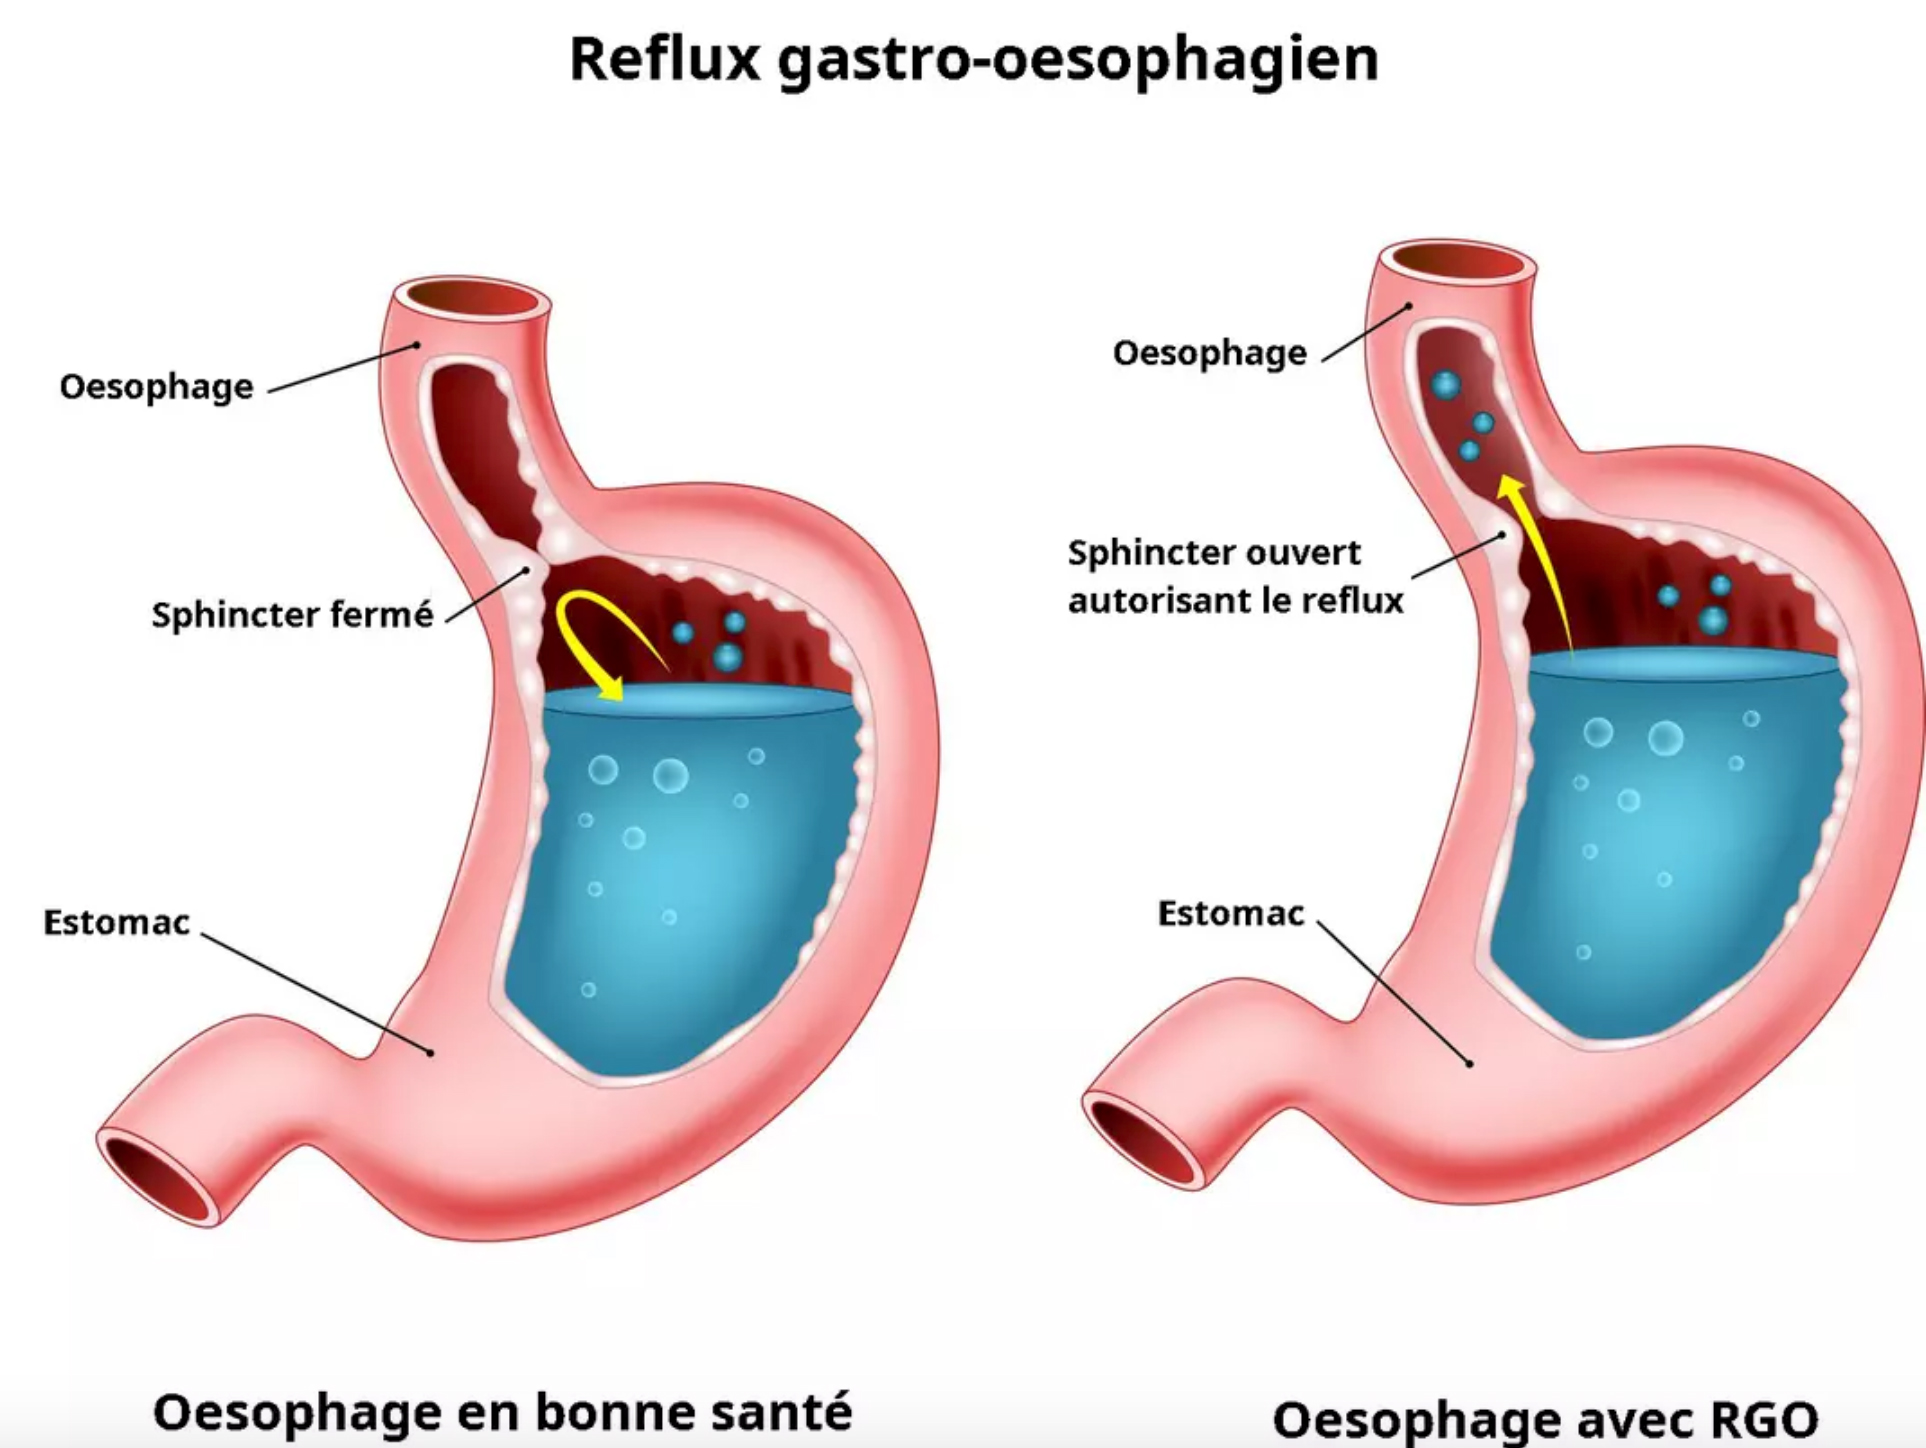 Le reflux gastro-œsophagien (RGO) - Consultation DR Juan AMARIS spécialiste gastro-enterologie